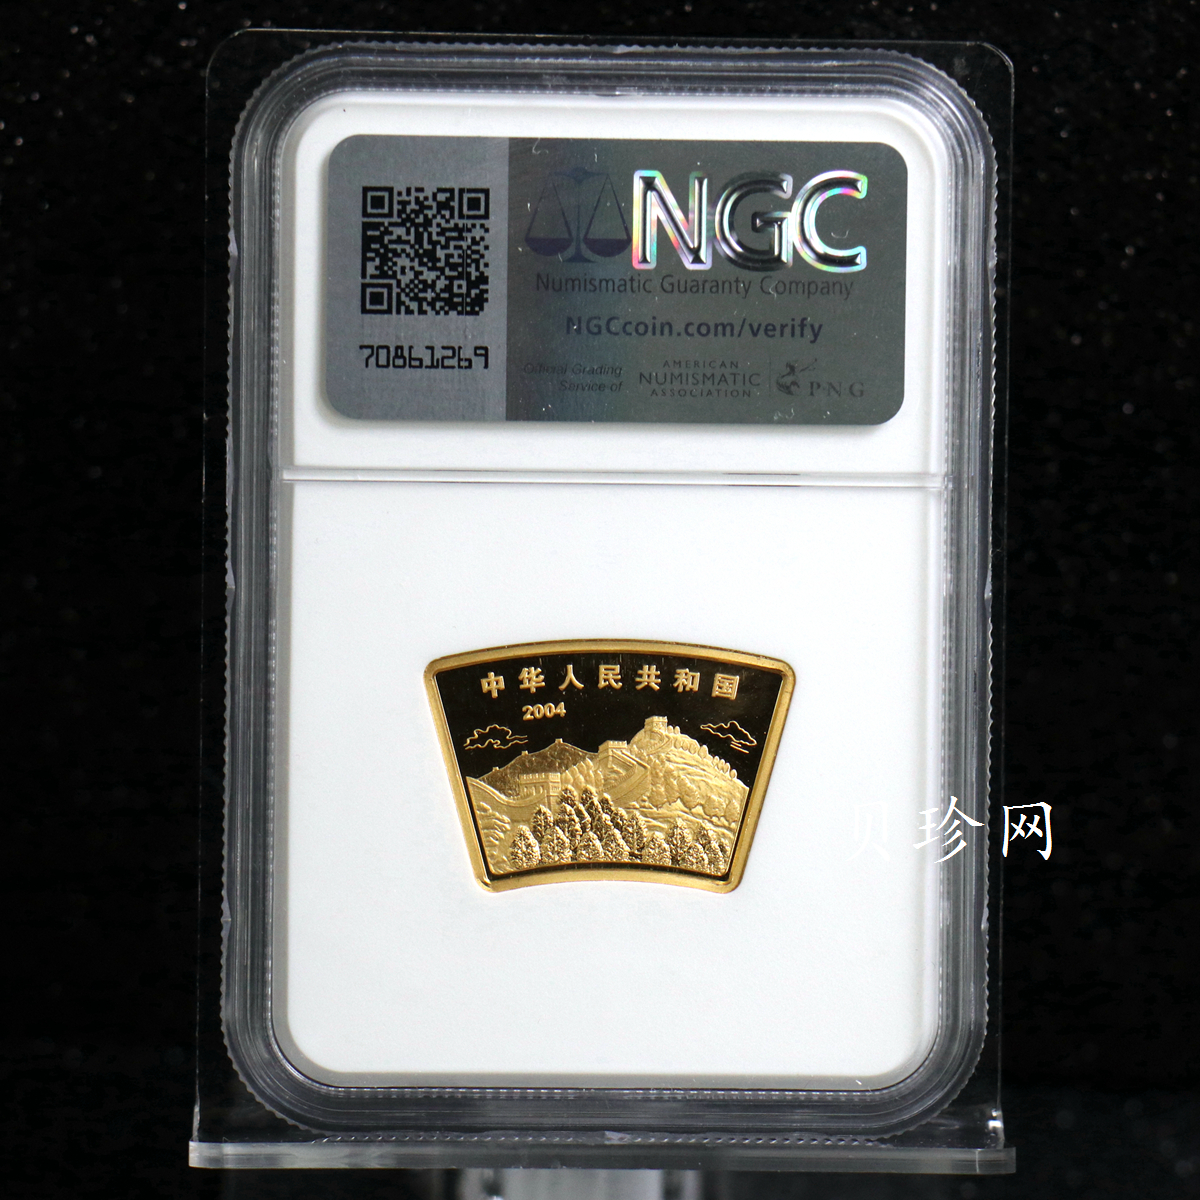 【040204】2004中国甲申（猴）年金纪念币-双猴图1/2盎司扇形普制金币